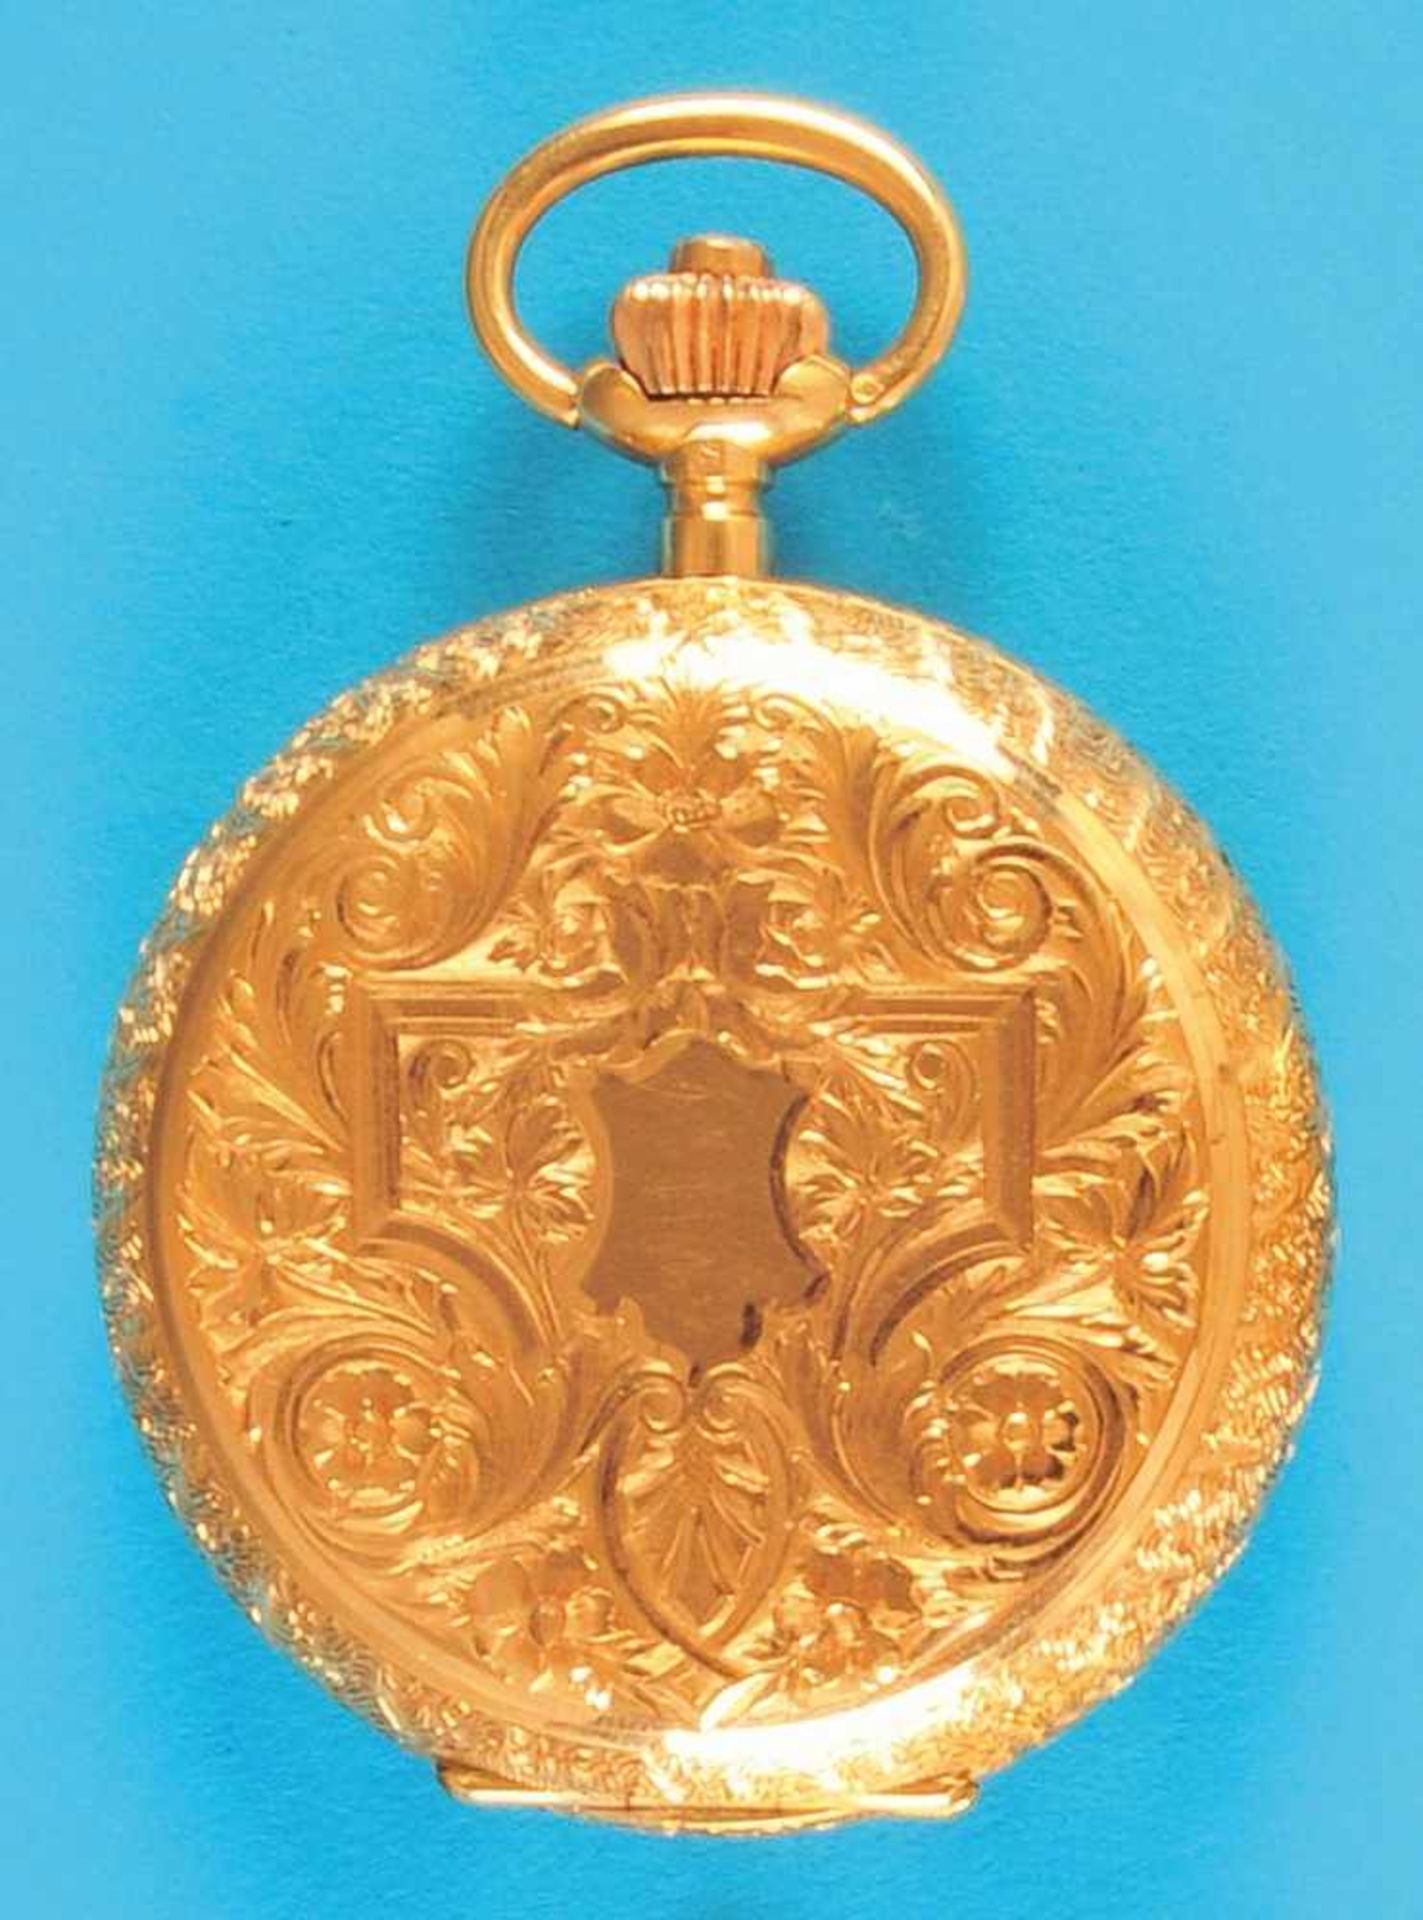 Goldne decorative pocket watch with spring coverGoldene Schmucktaschenuhr mit Sprungdeckel, mit